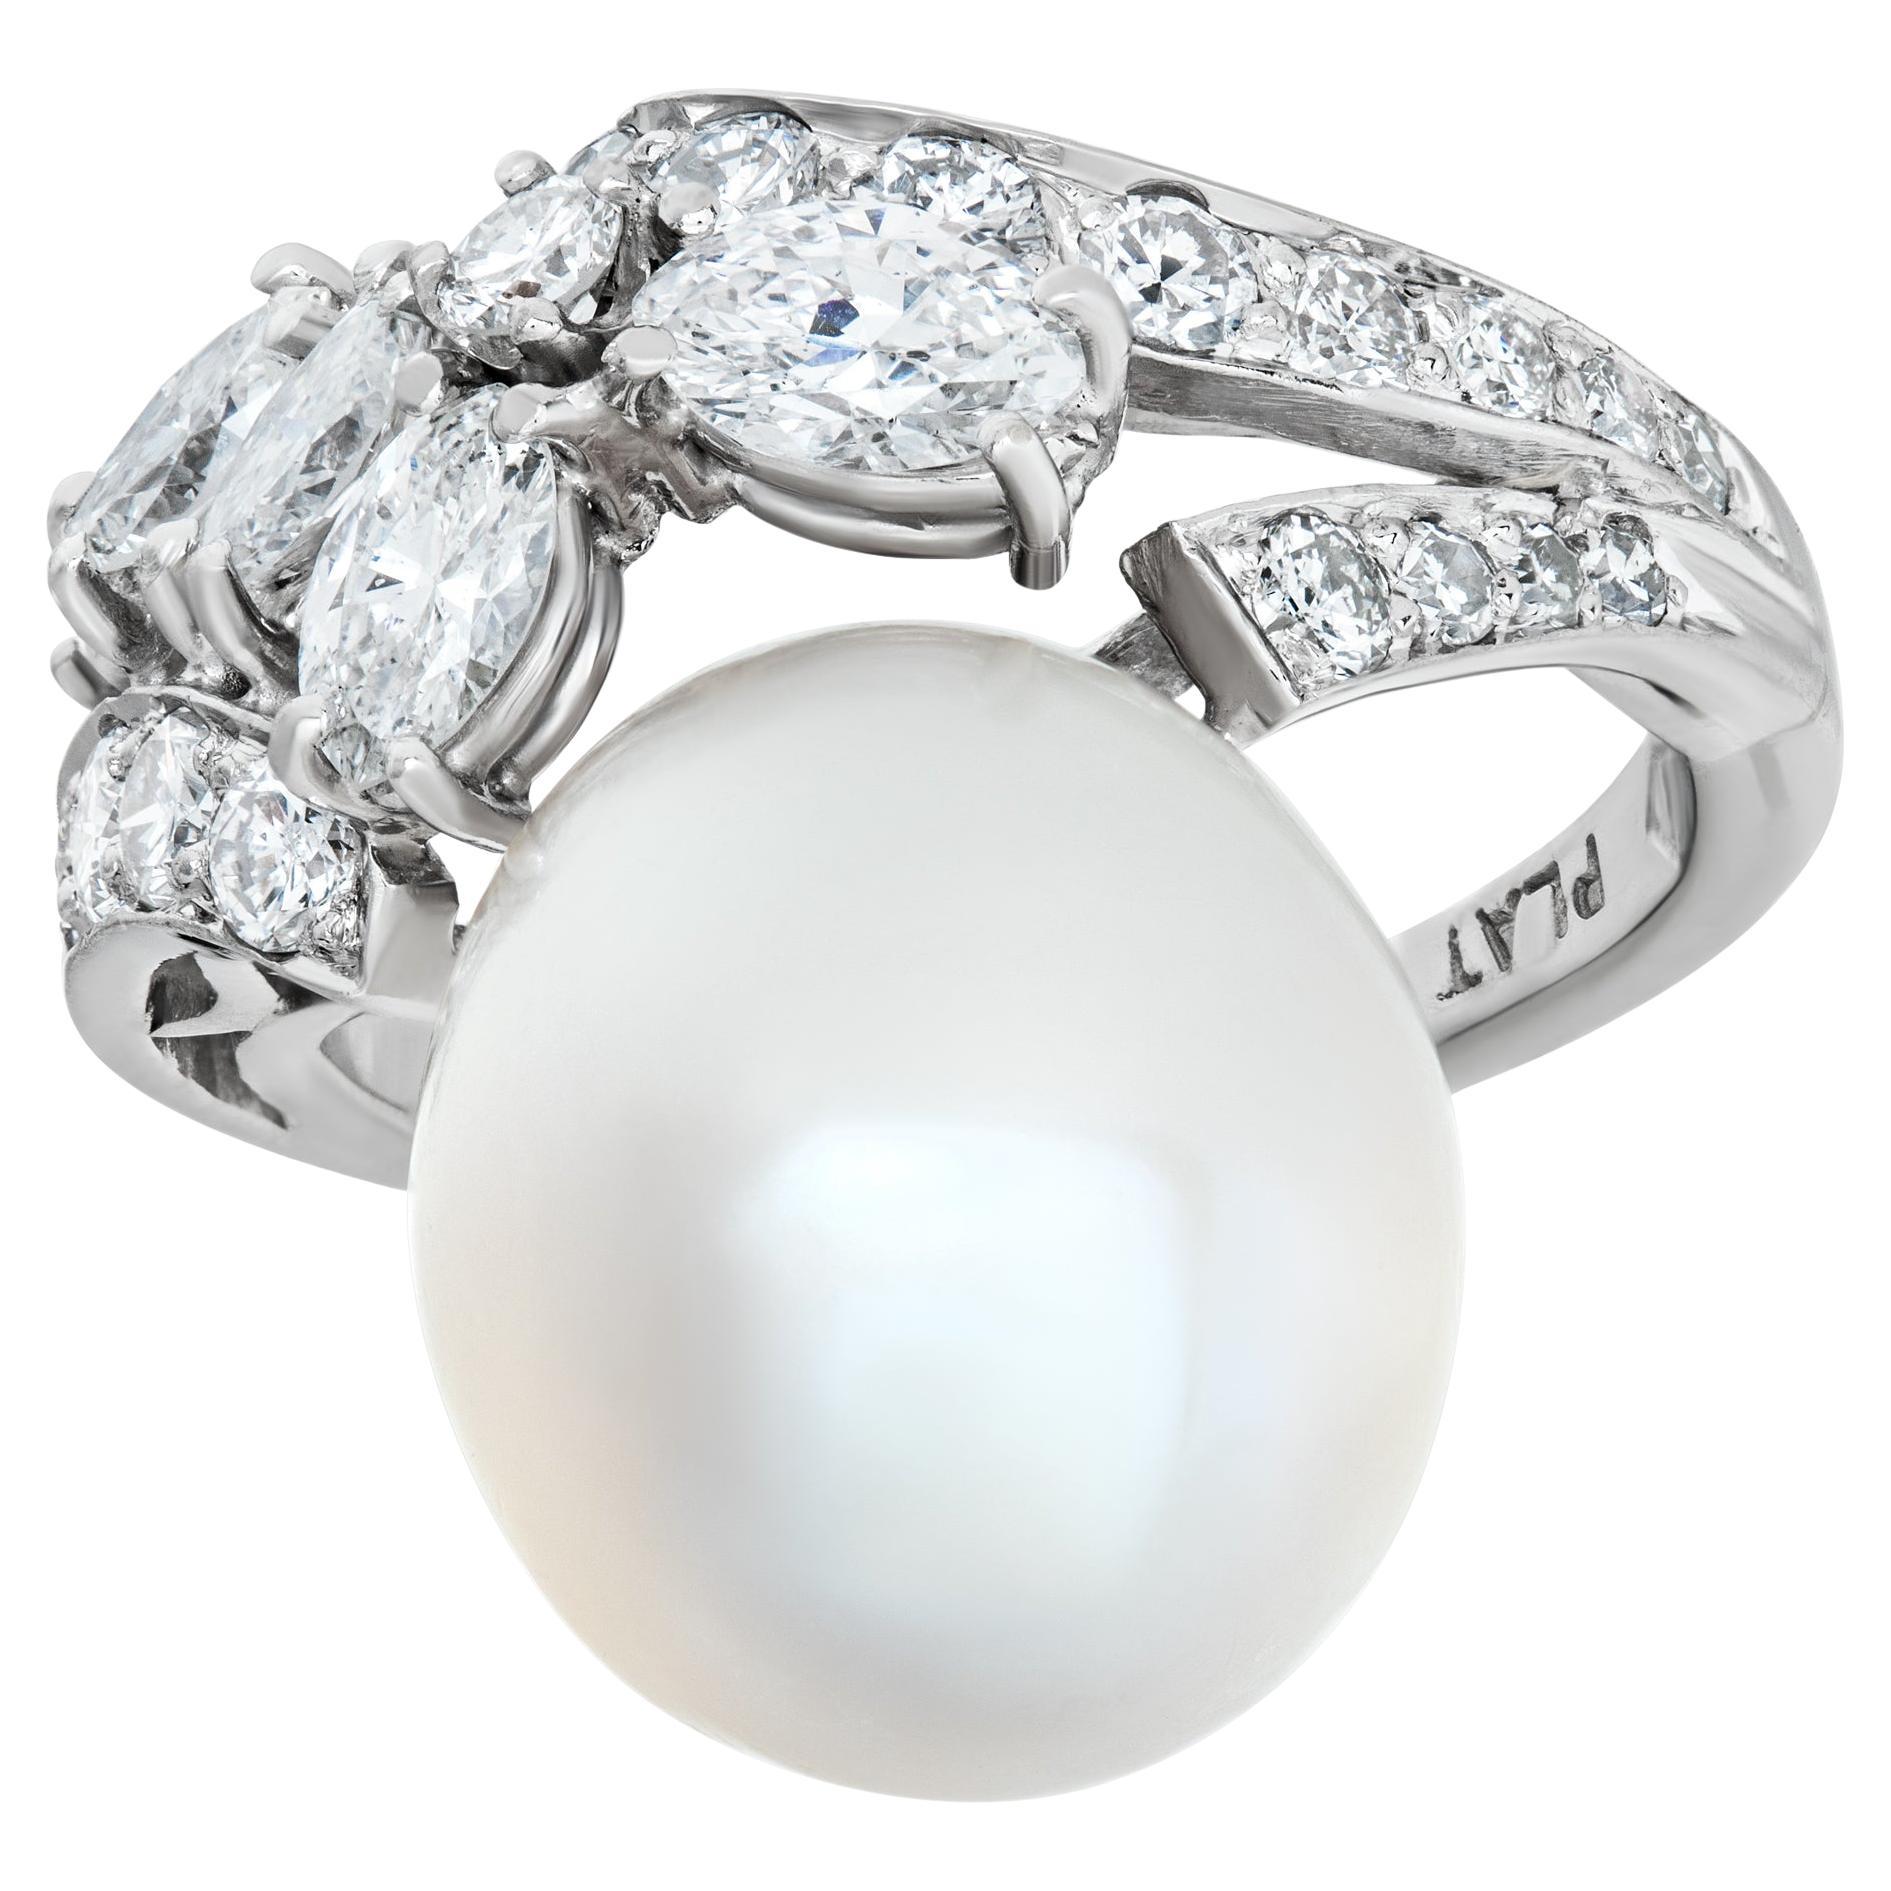 Pearl & Diamond Ring Set in Platinum